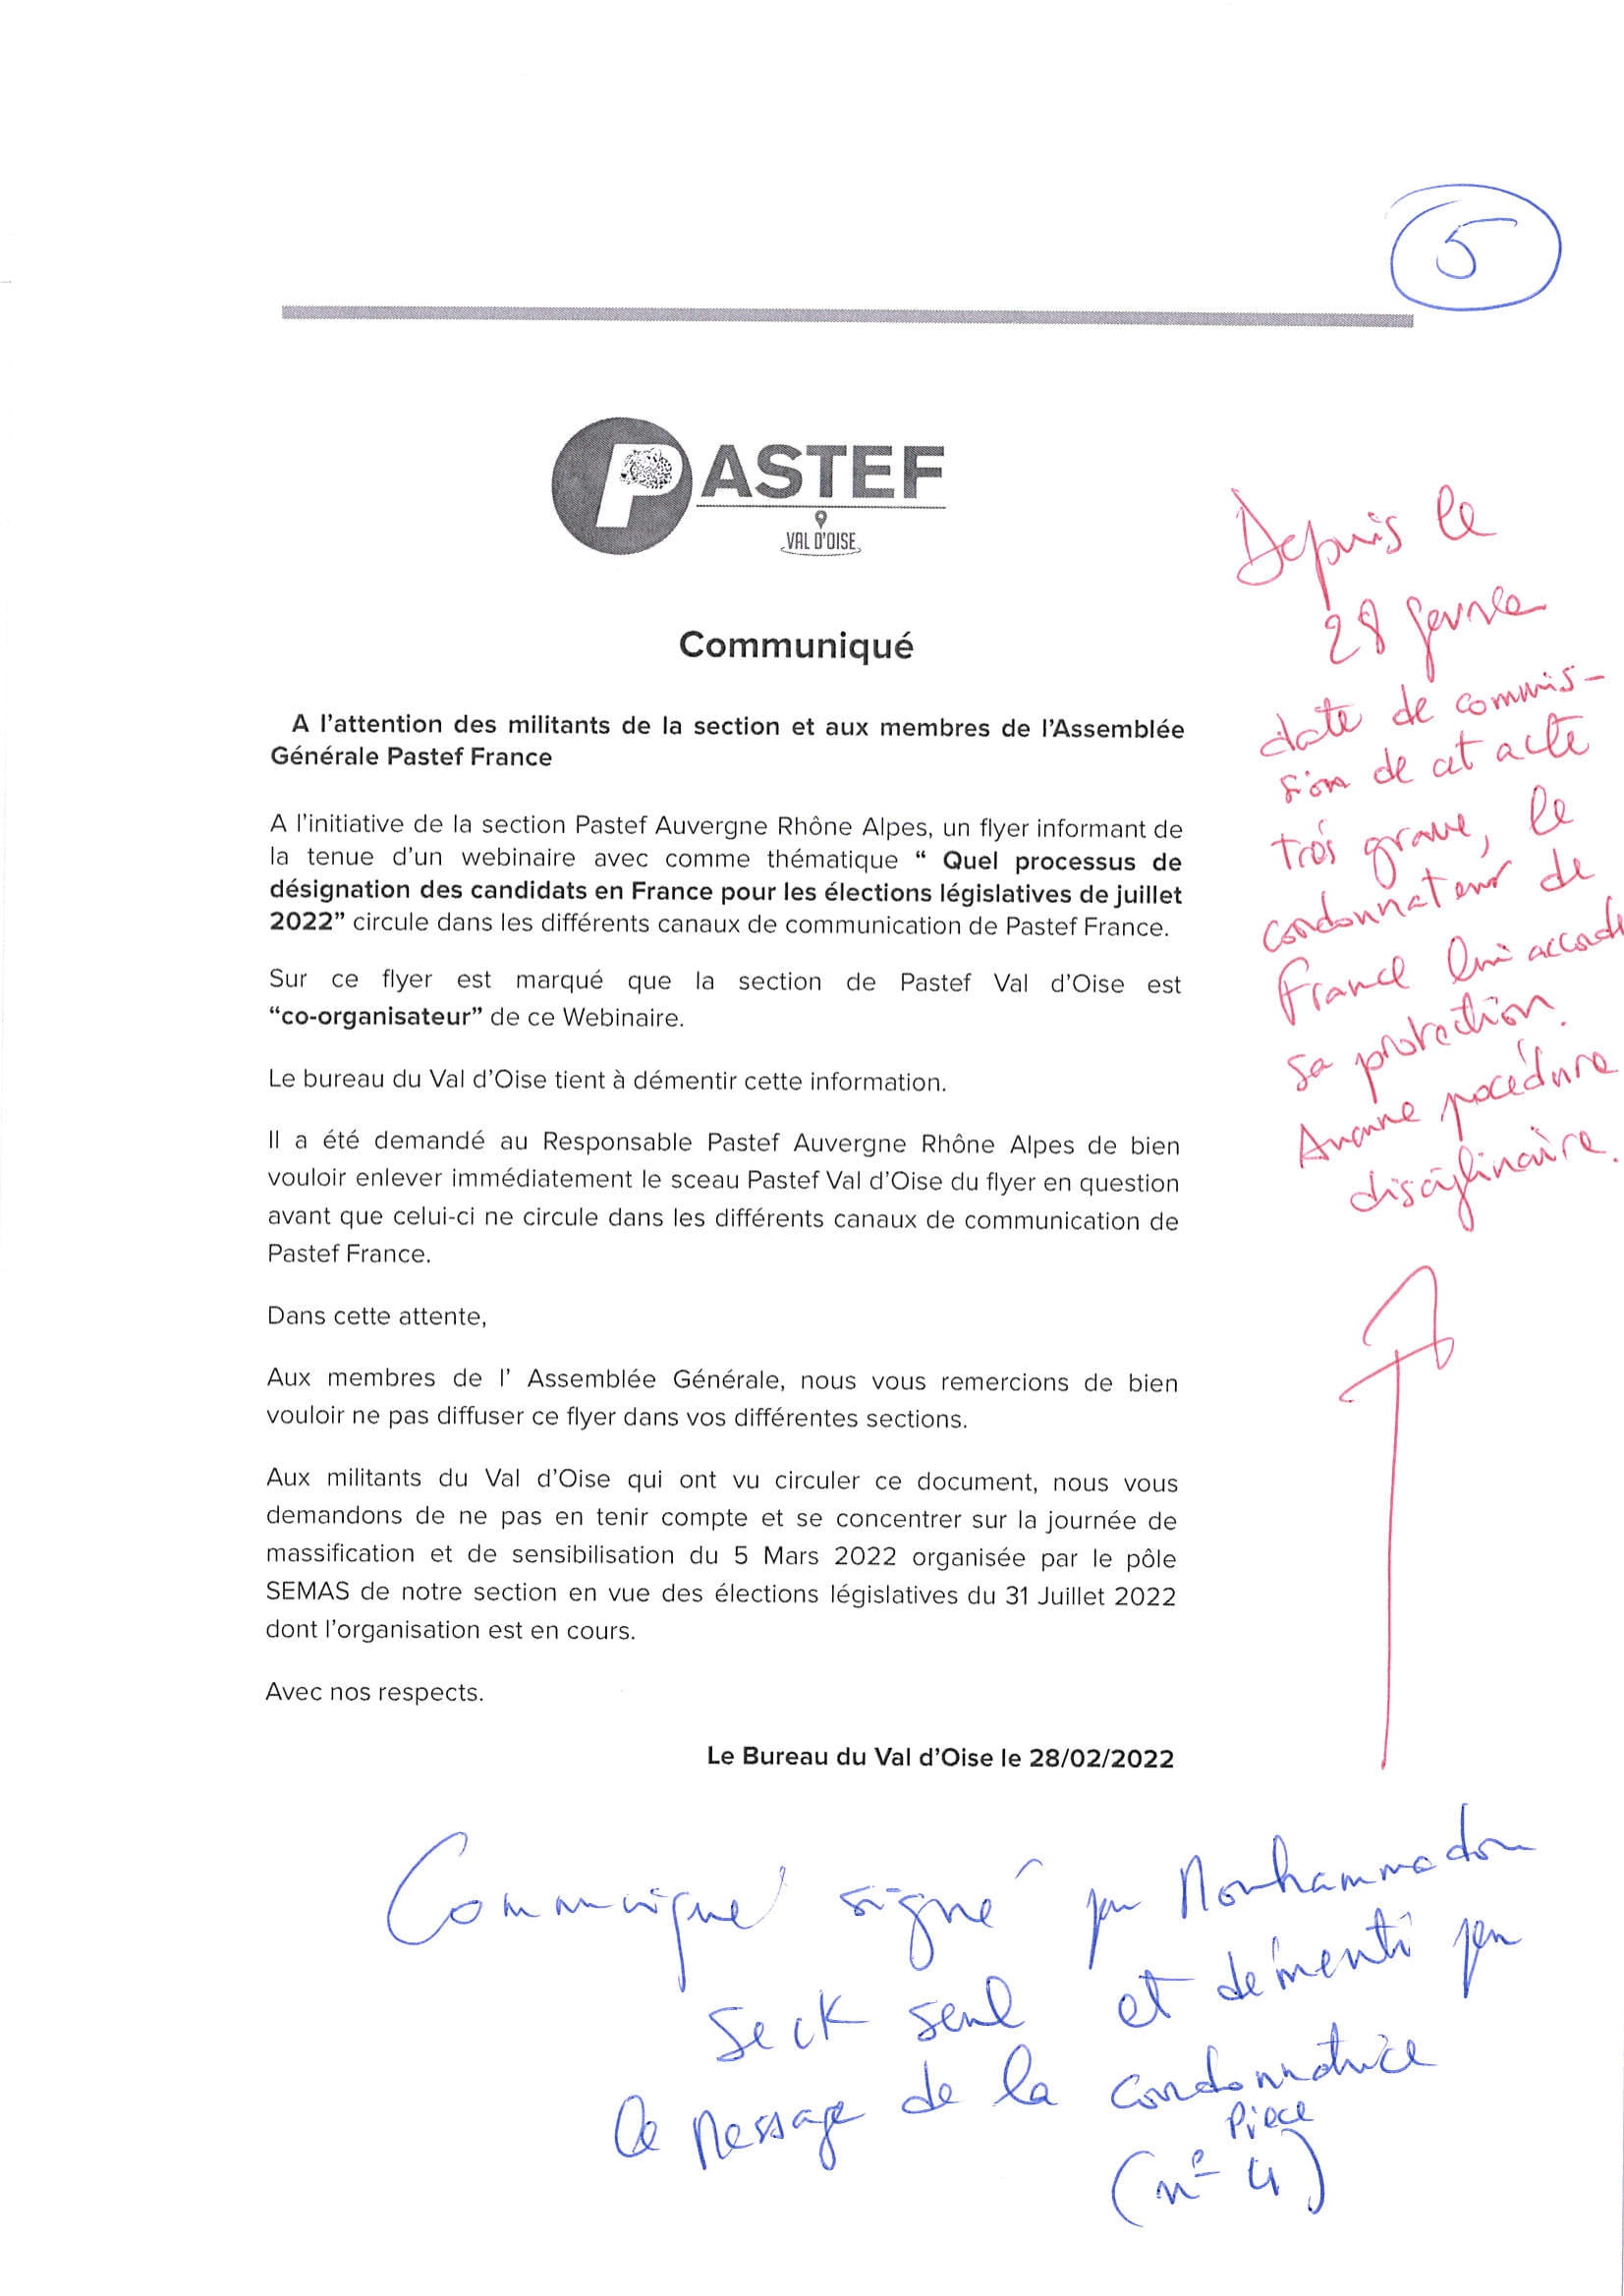 Faux et usage de faux: Un responsable de Pastef France au coeur d’un scandale ( Documents )